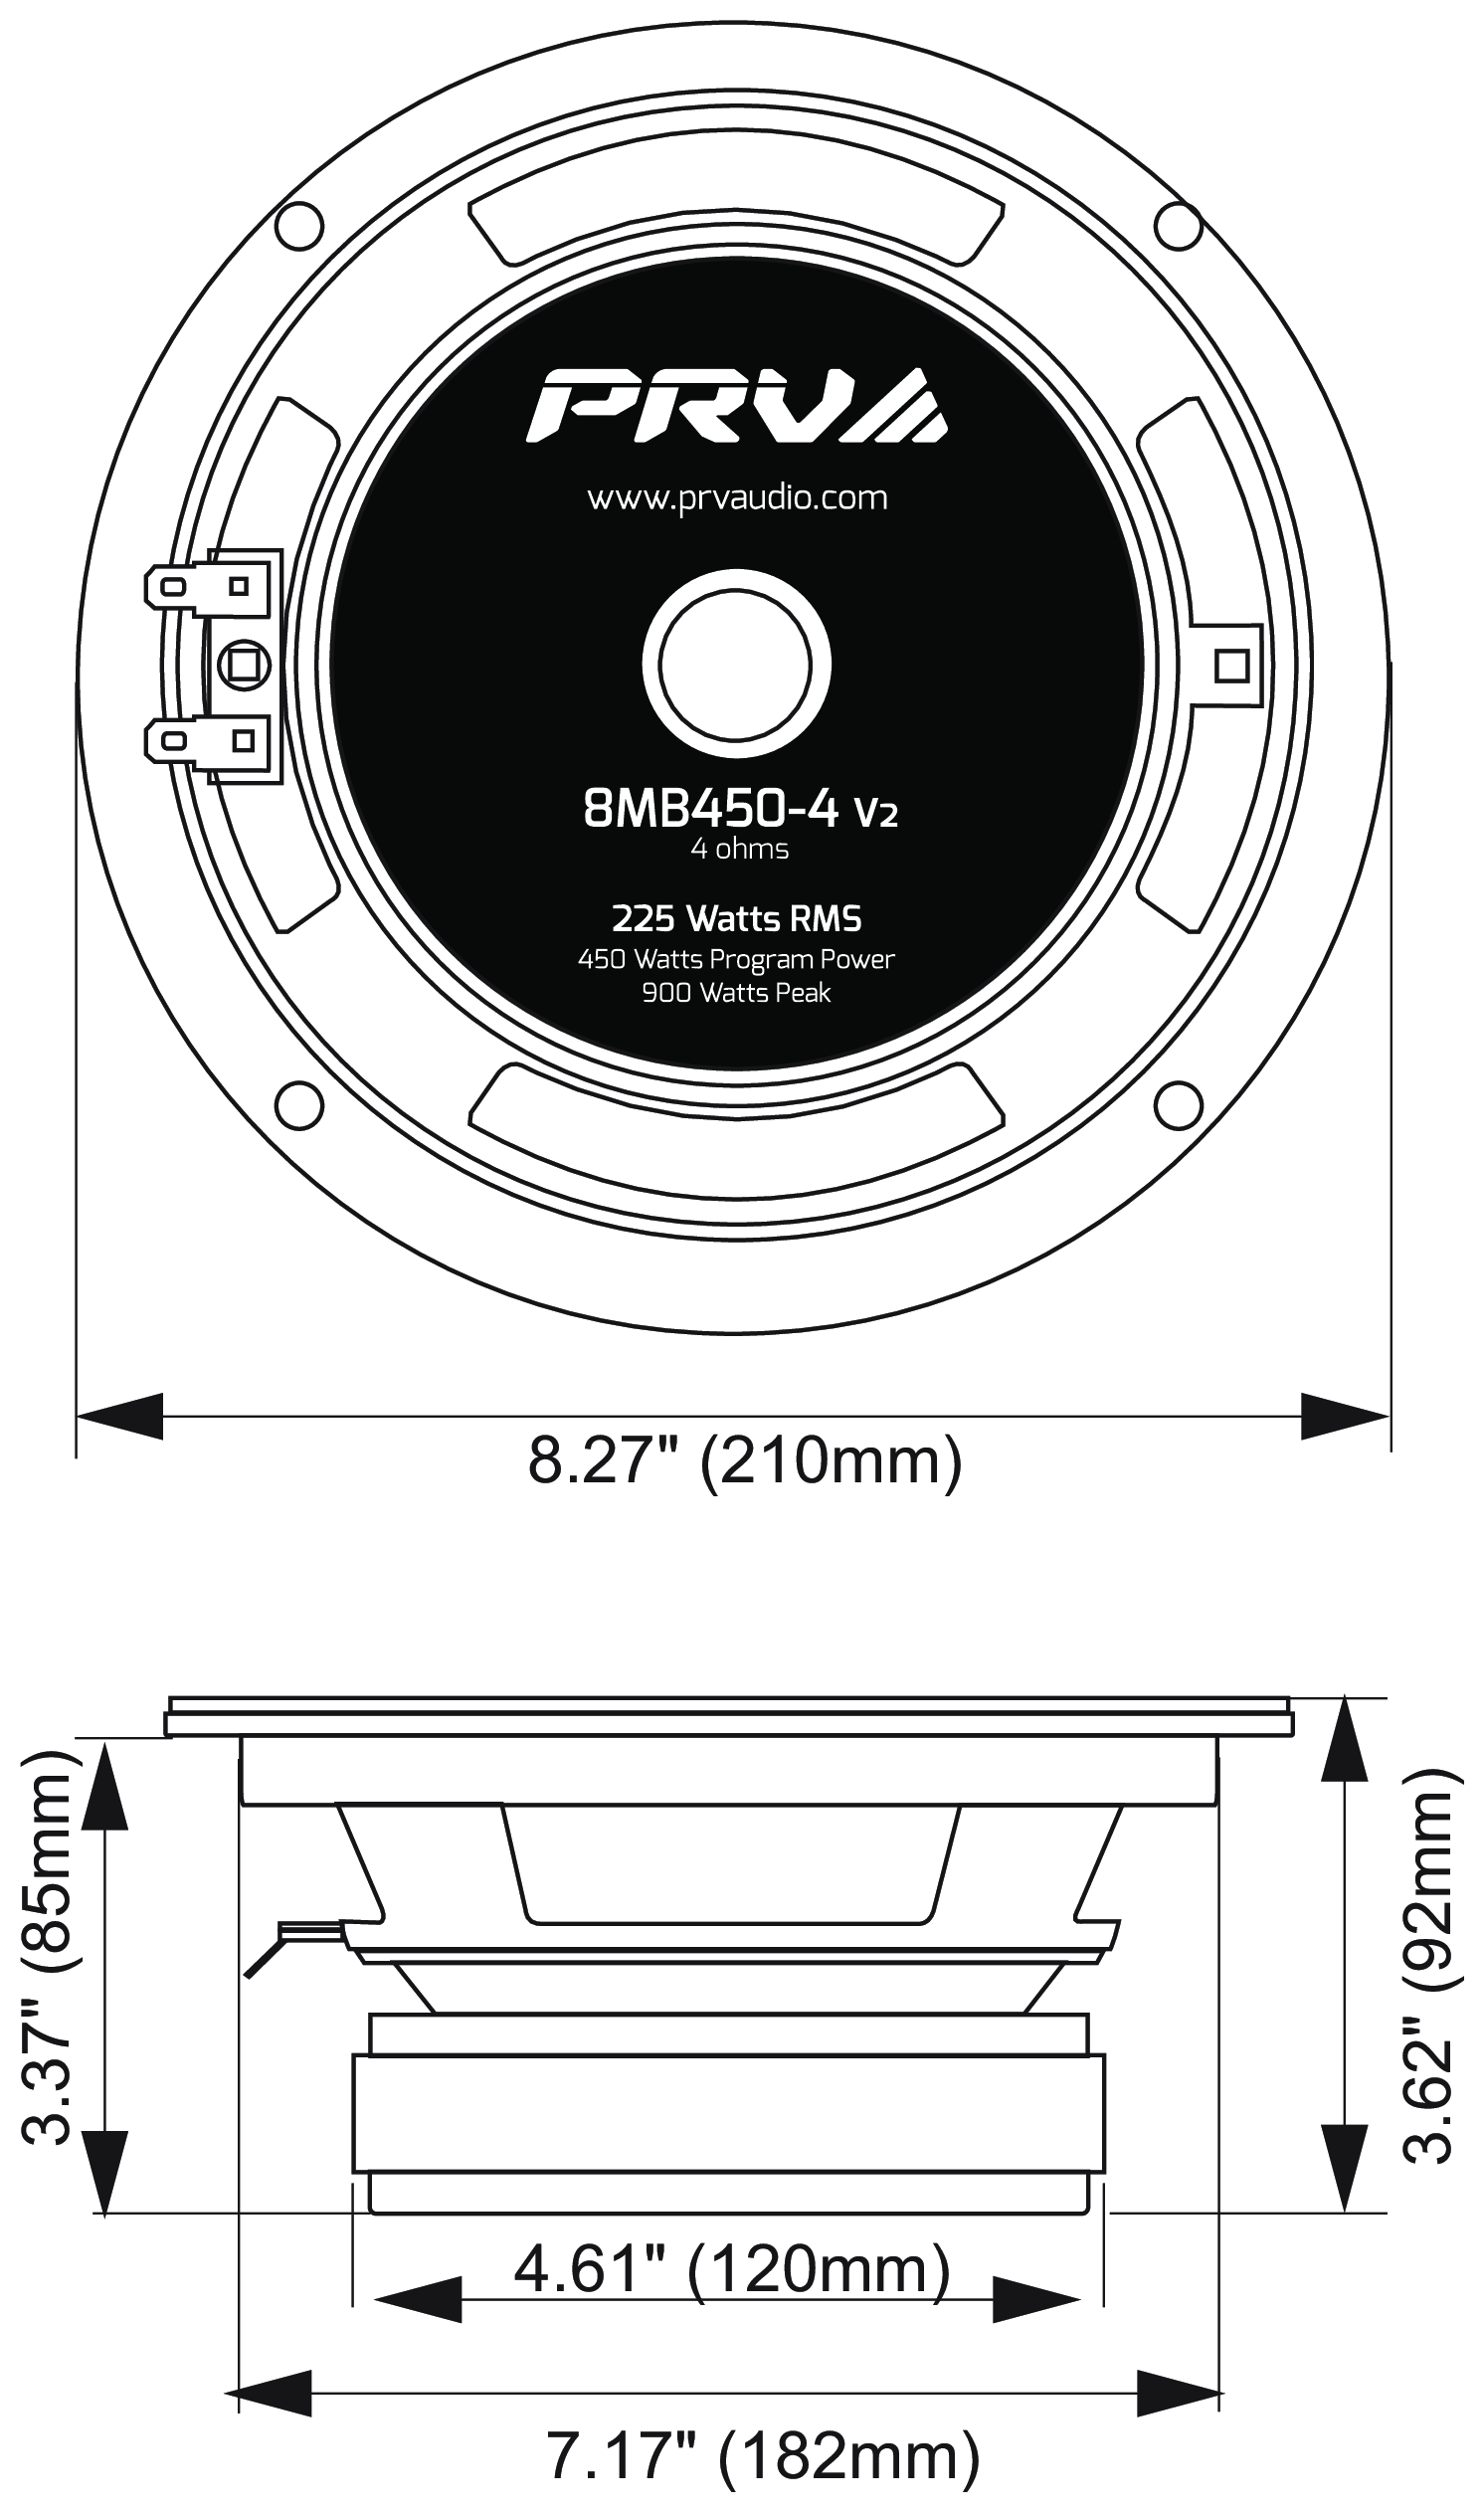 PRV Audio 8MB450-4 v2 Dimensions